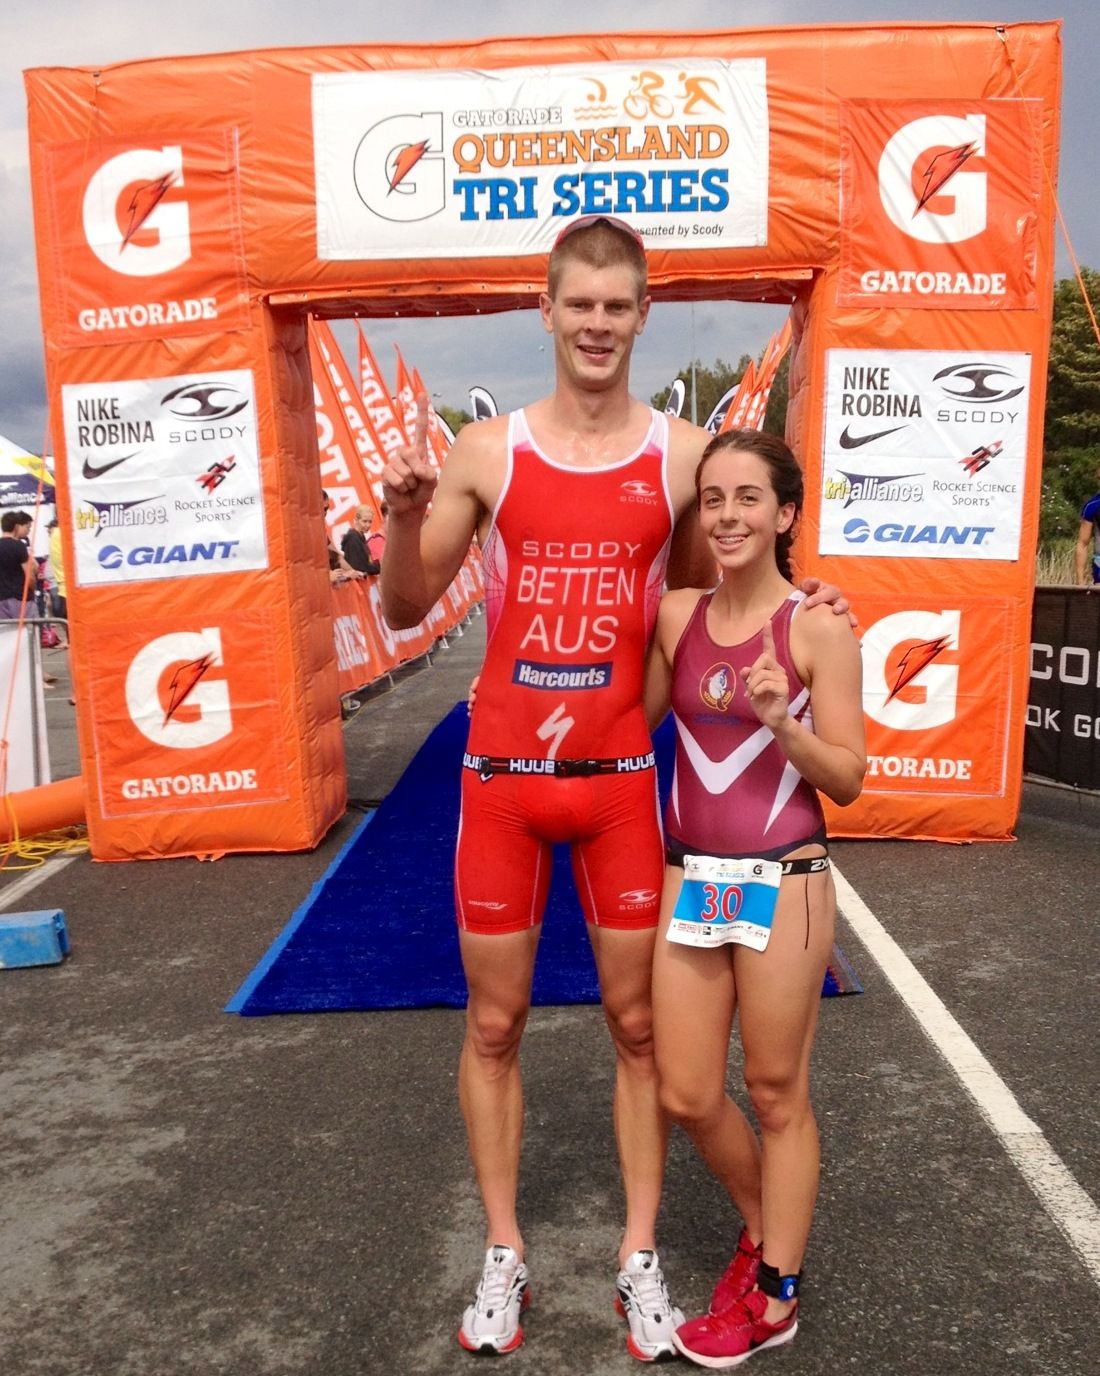 Sam Betten and Brittany Dutton win Gatorade Queensland Triathlon Series Race 2